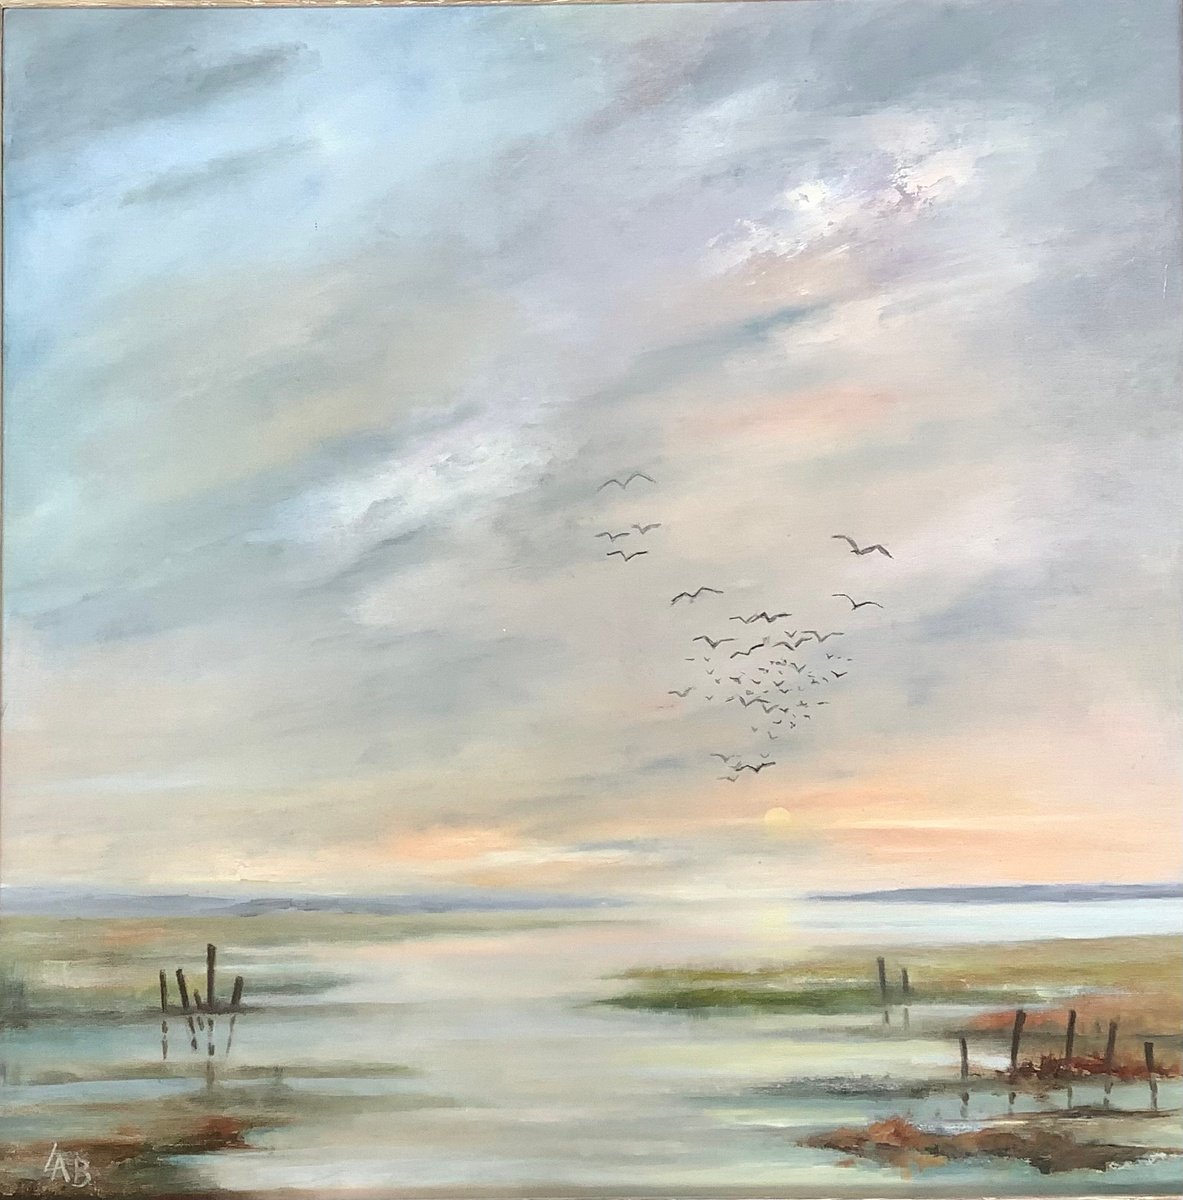 Estuary by Linda Bartlett